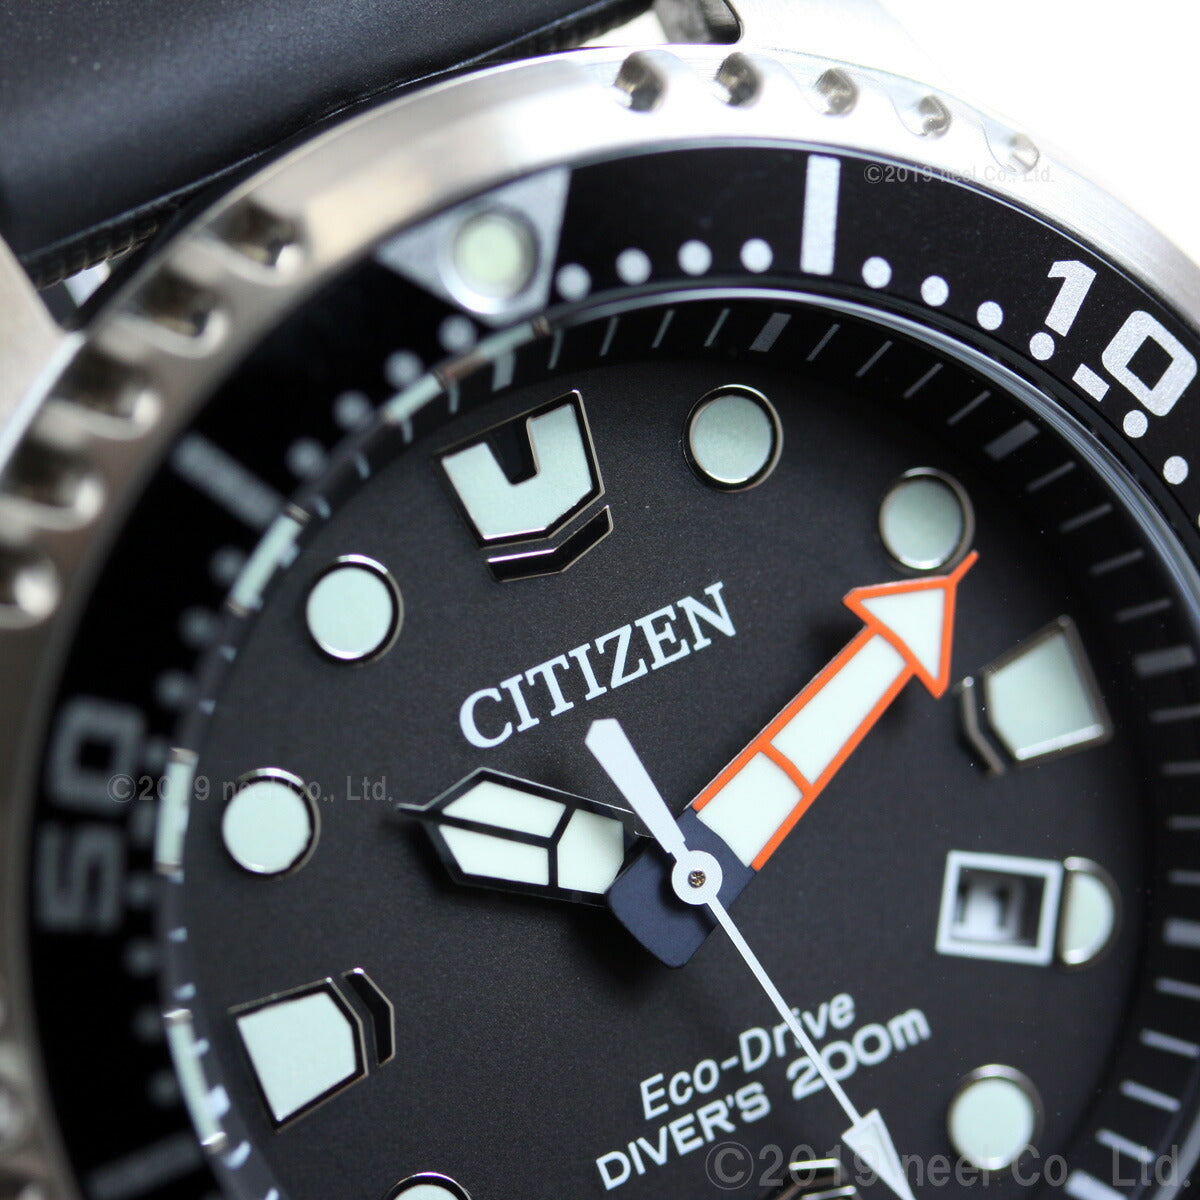 シチズン プロマスター CITIZEN PROMASTER エコドライブ ソーラー 腕時計 メンズ スタンダードダイバー ダイバーズウォッチ BN0156-05E